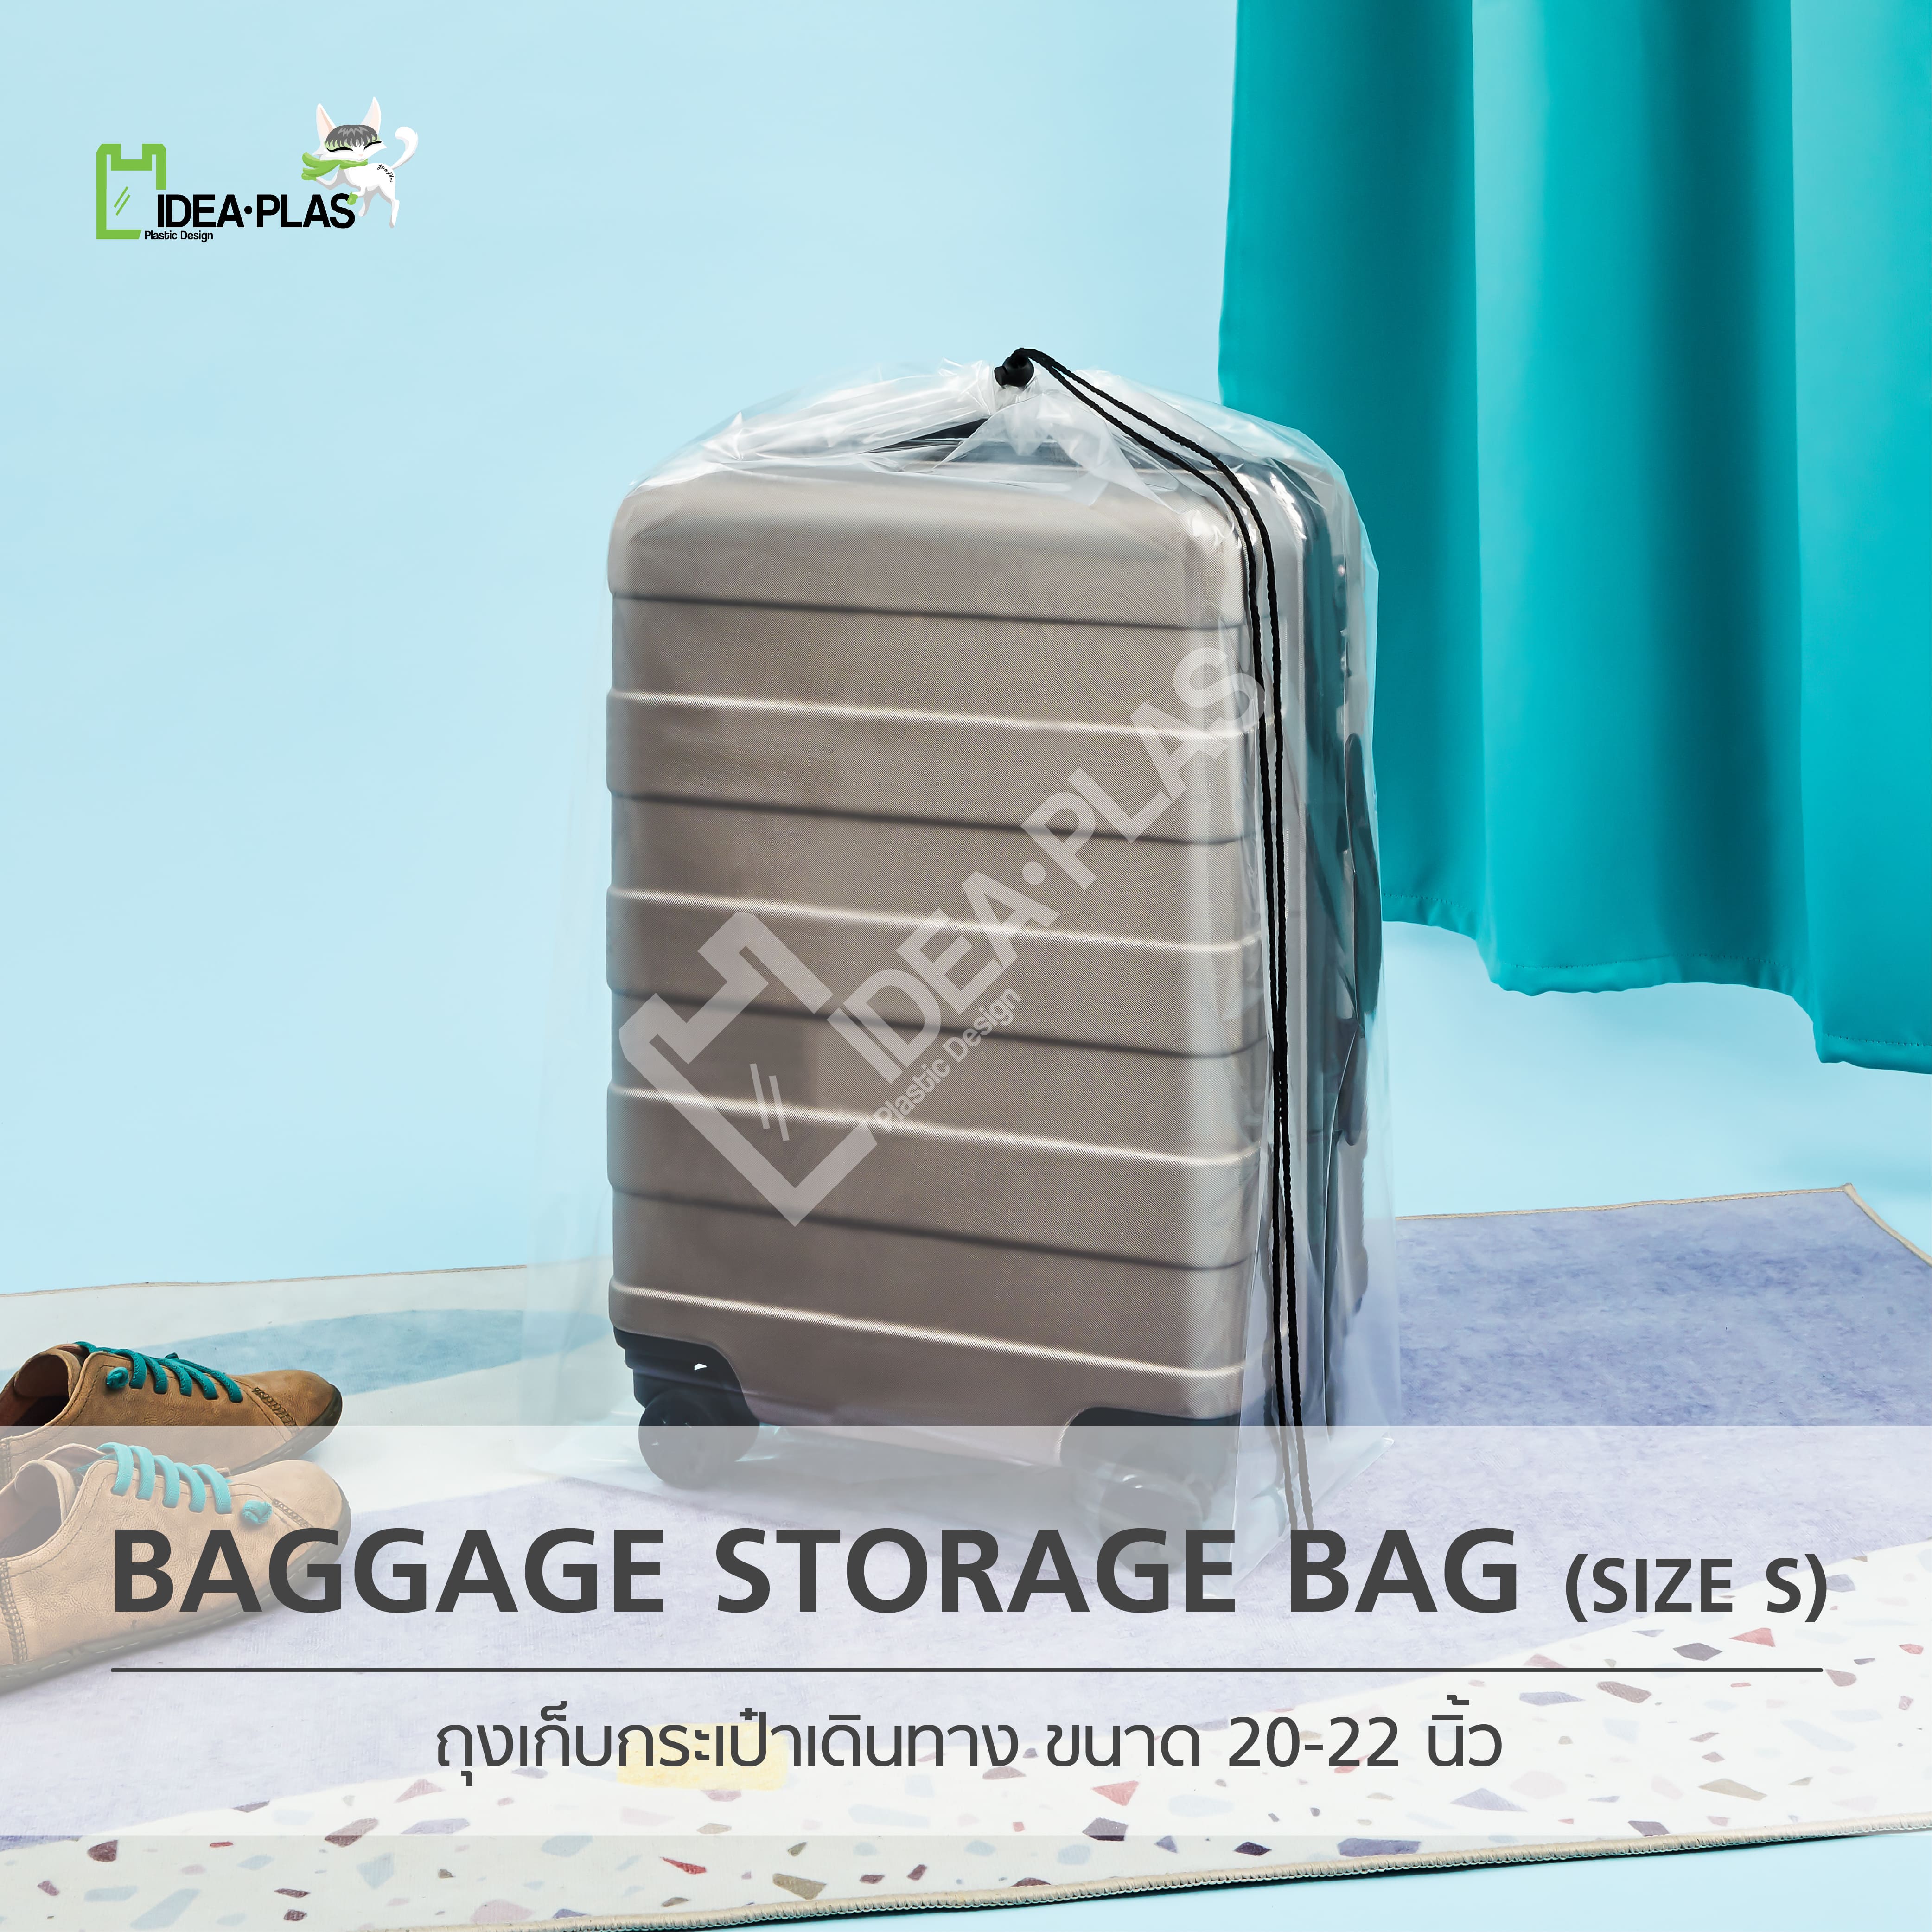 ถุงเก็บกระเป๋าเดินทาง (Baggage Storage Bag) Size S - IDEAPLAS (3SET)